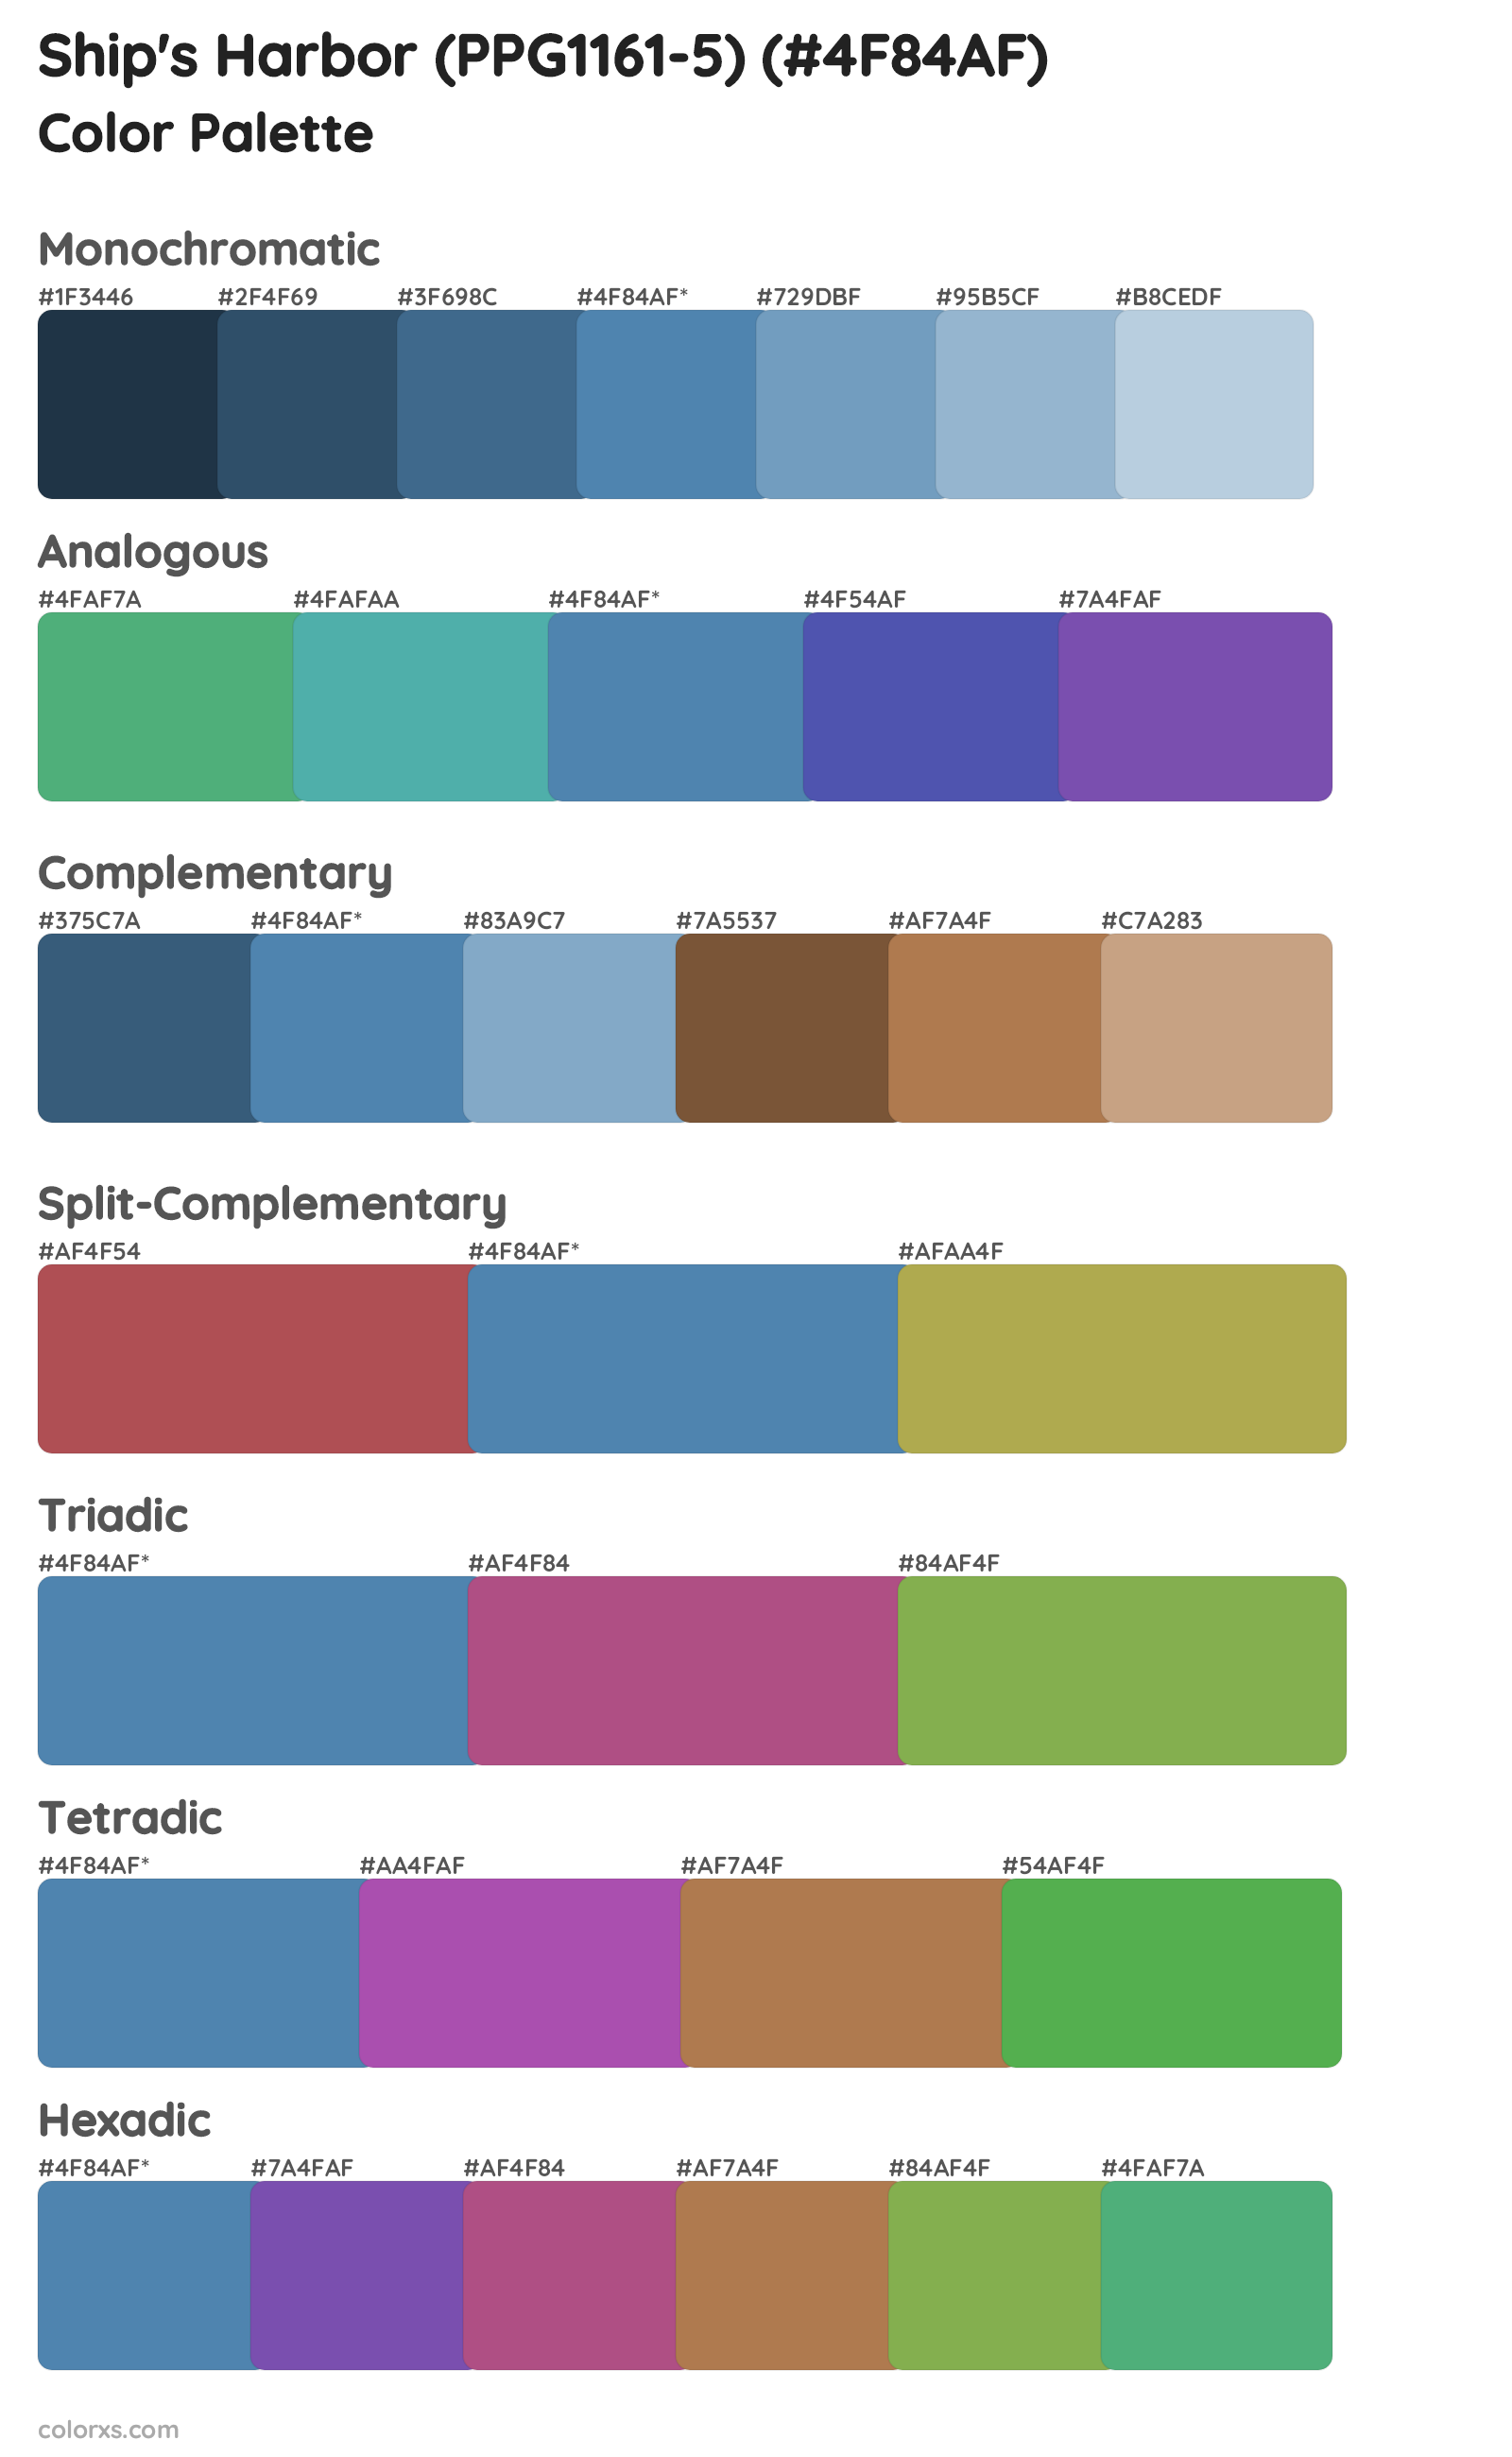 Ship's Harbor (PPG1161-5) Color Scheme Palettes